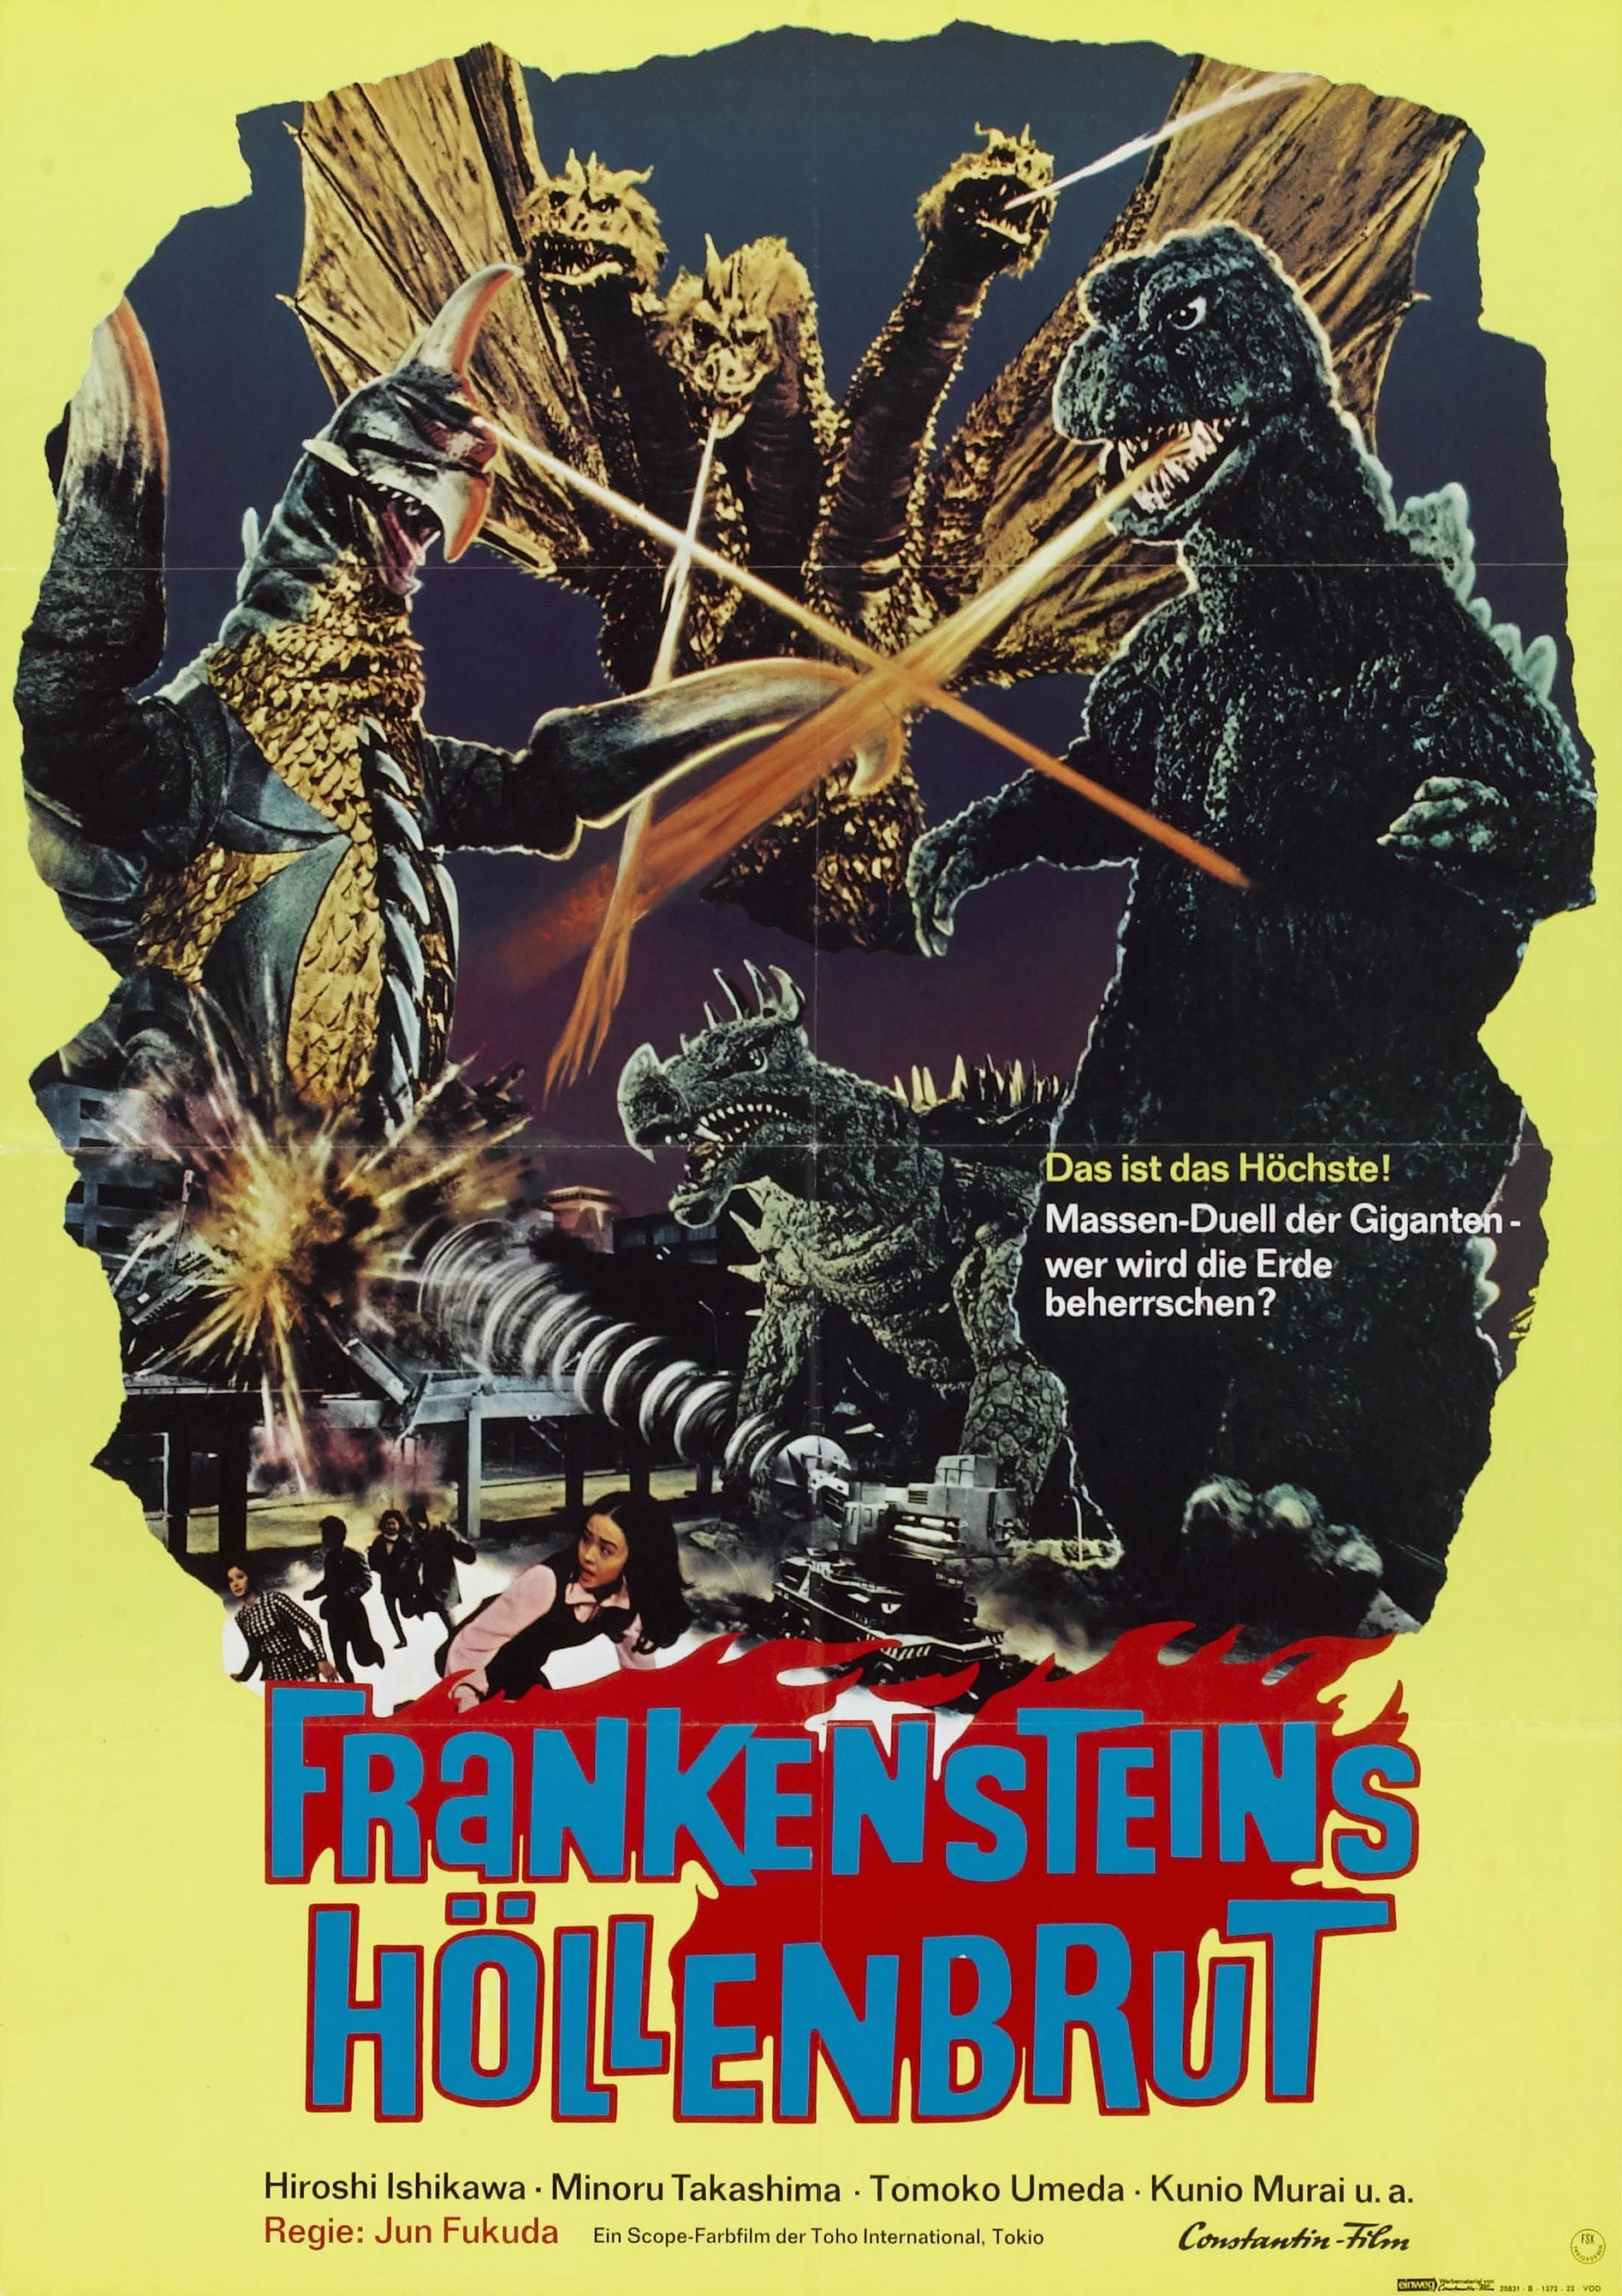 Plakat von "Frankensteins Höllenbrut"